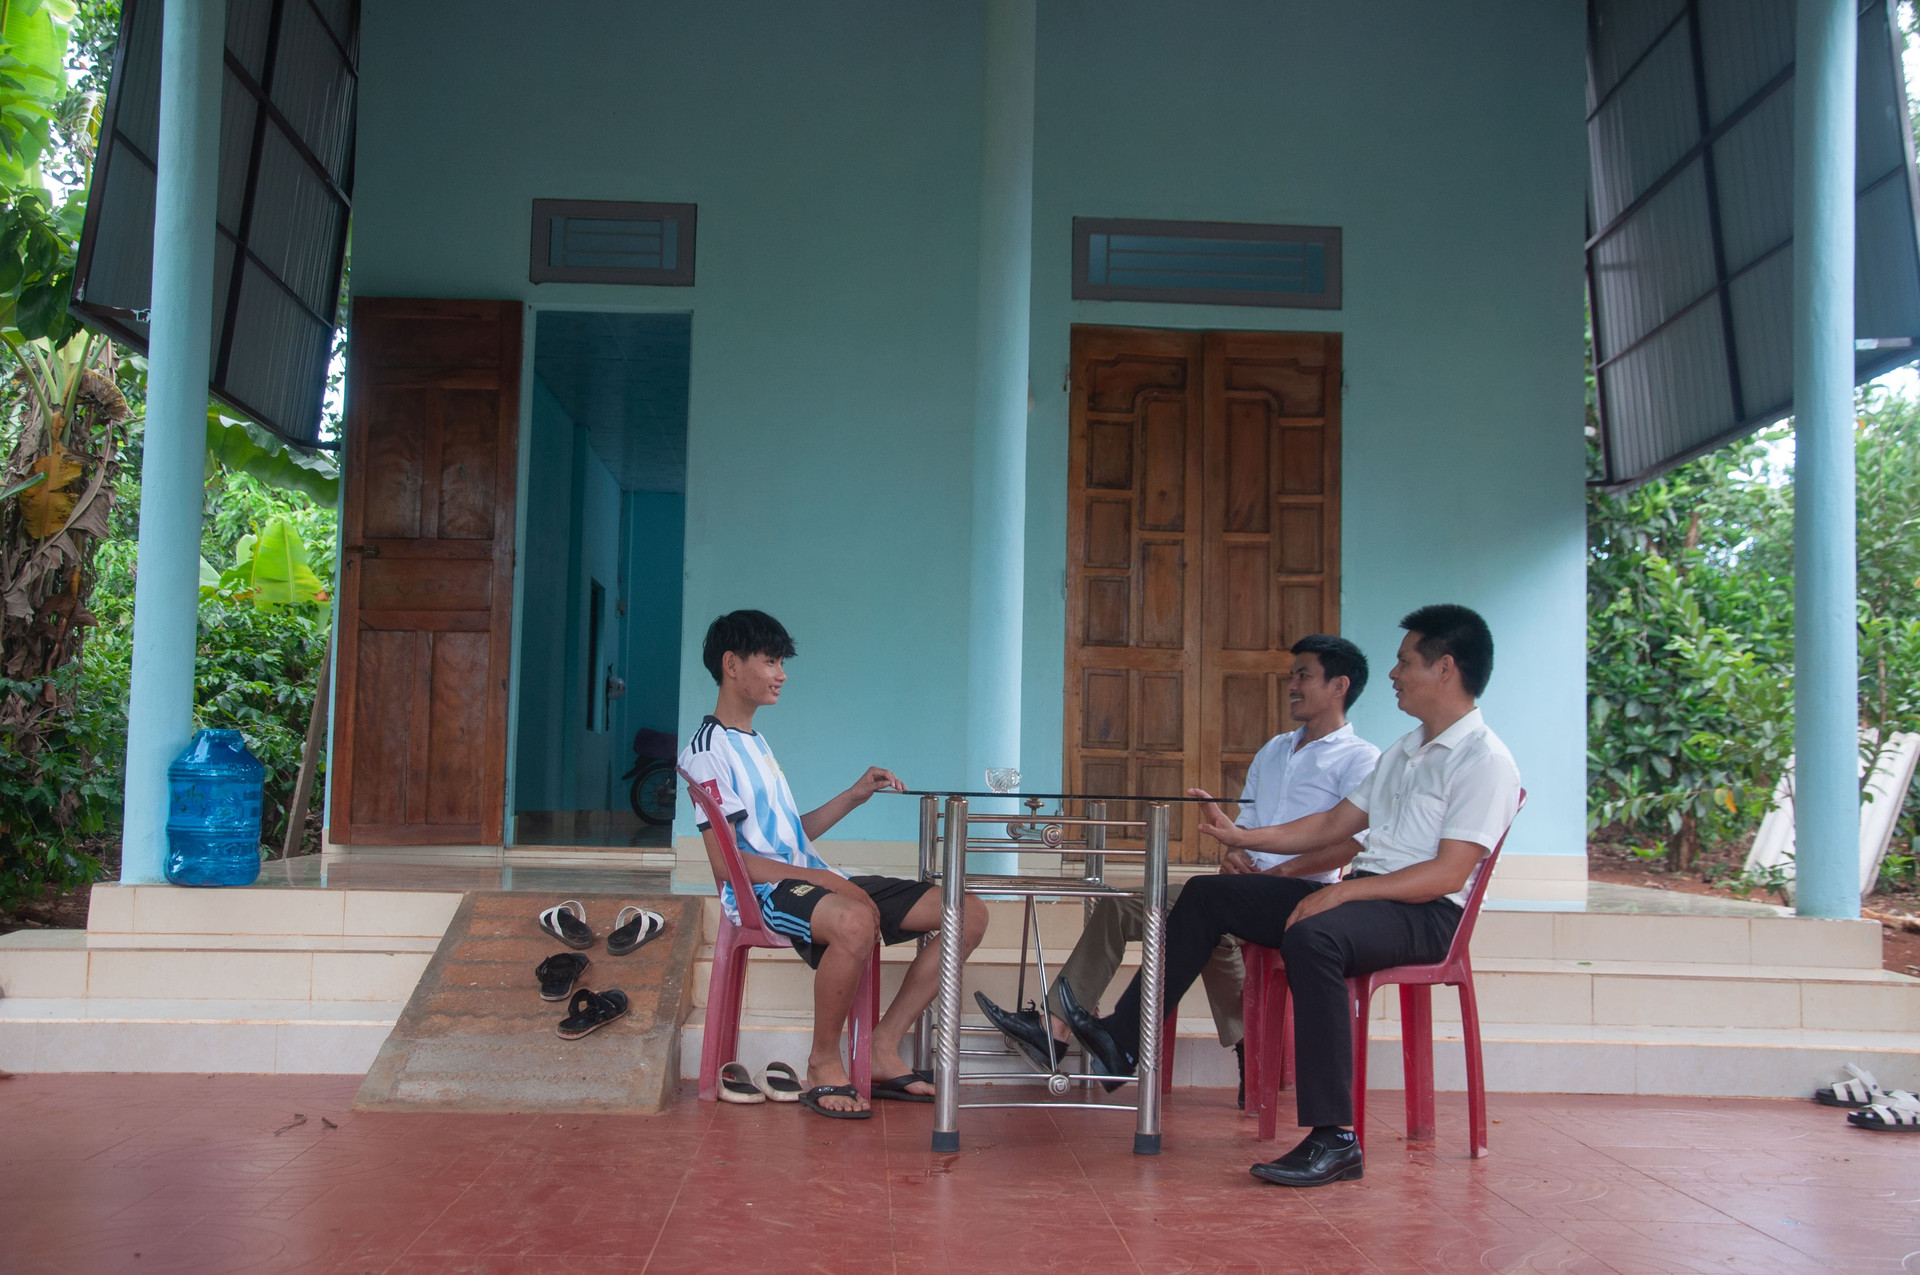 Cháu Ngô Văn Suy ngồi trò chuyện cùng khách tới thăm nhà.